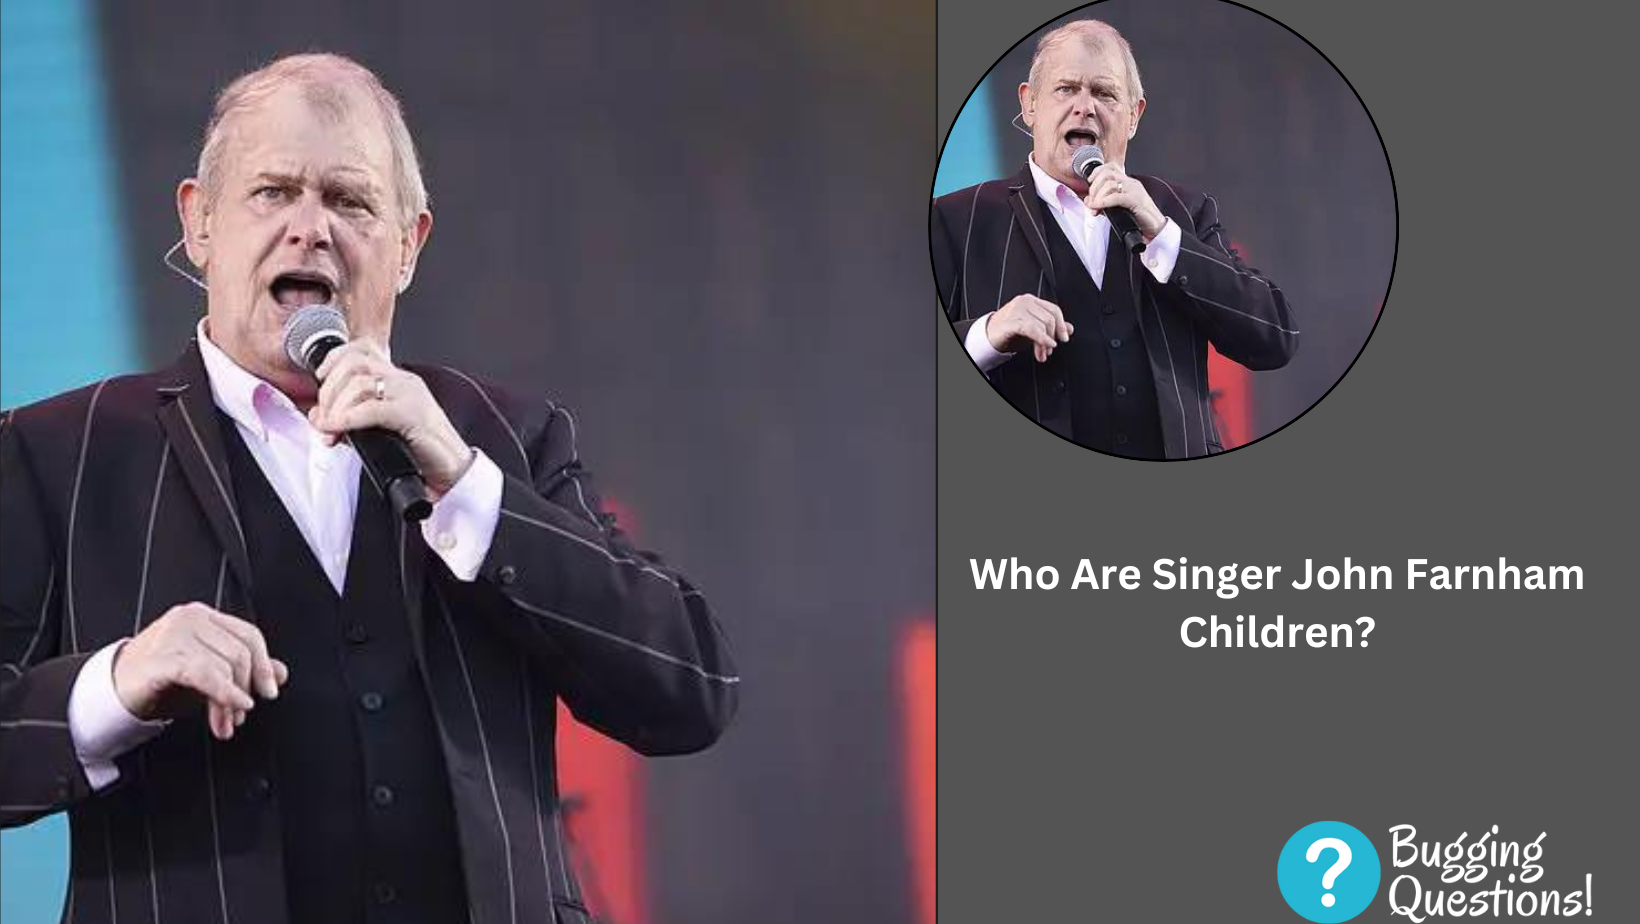 Who Are Singer John Farnham Children?